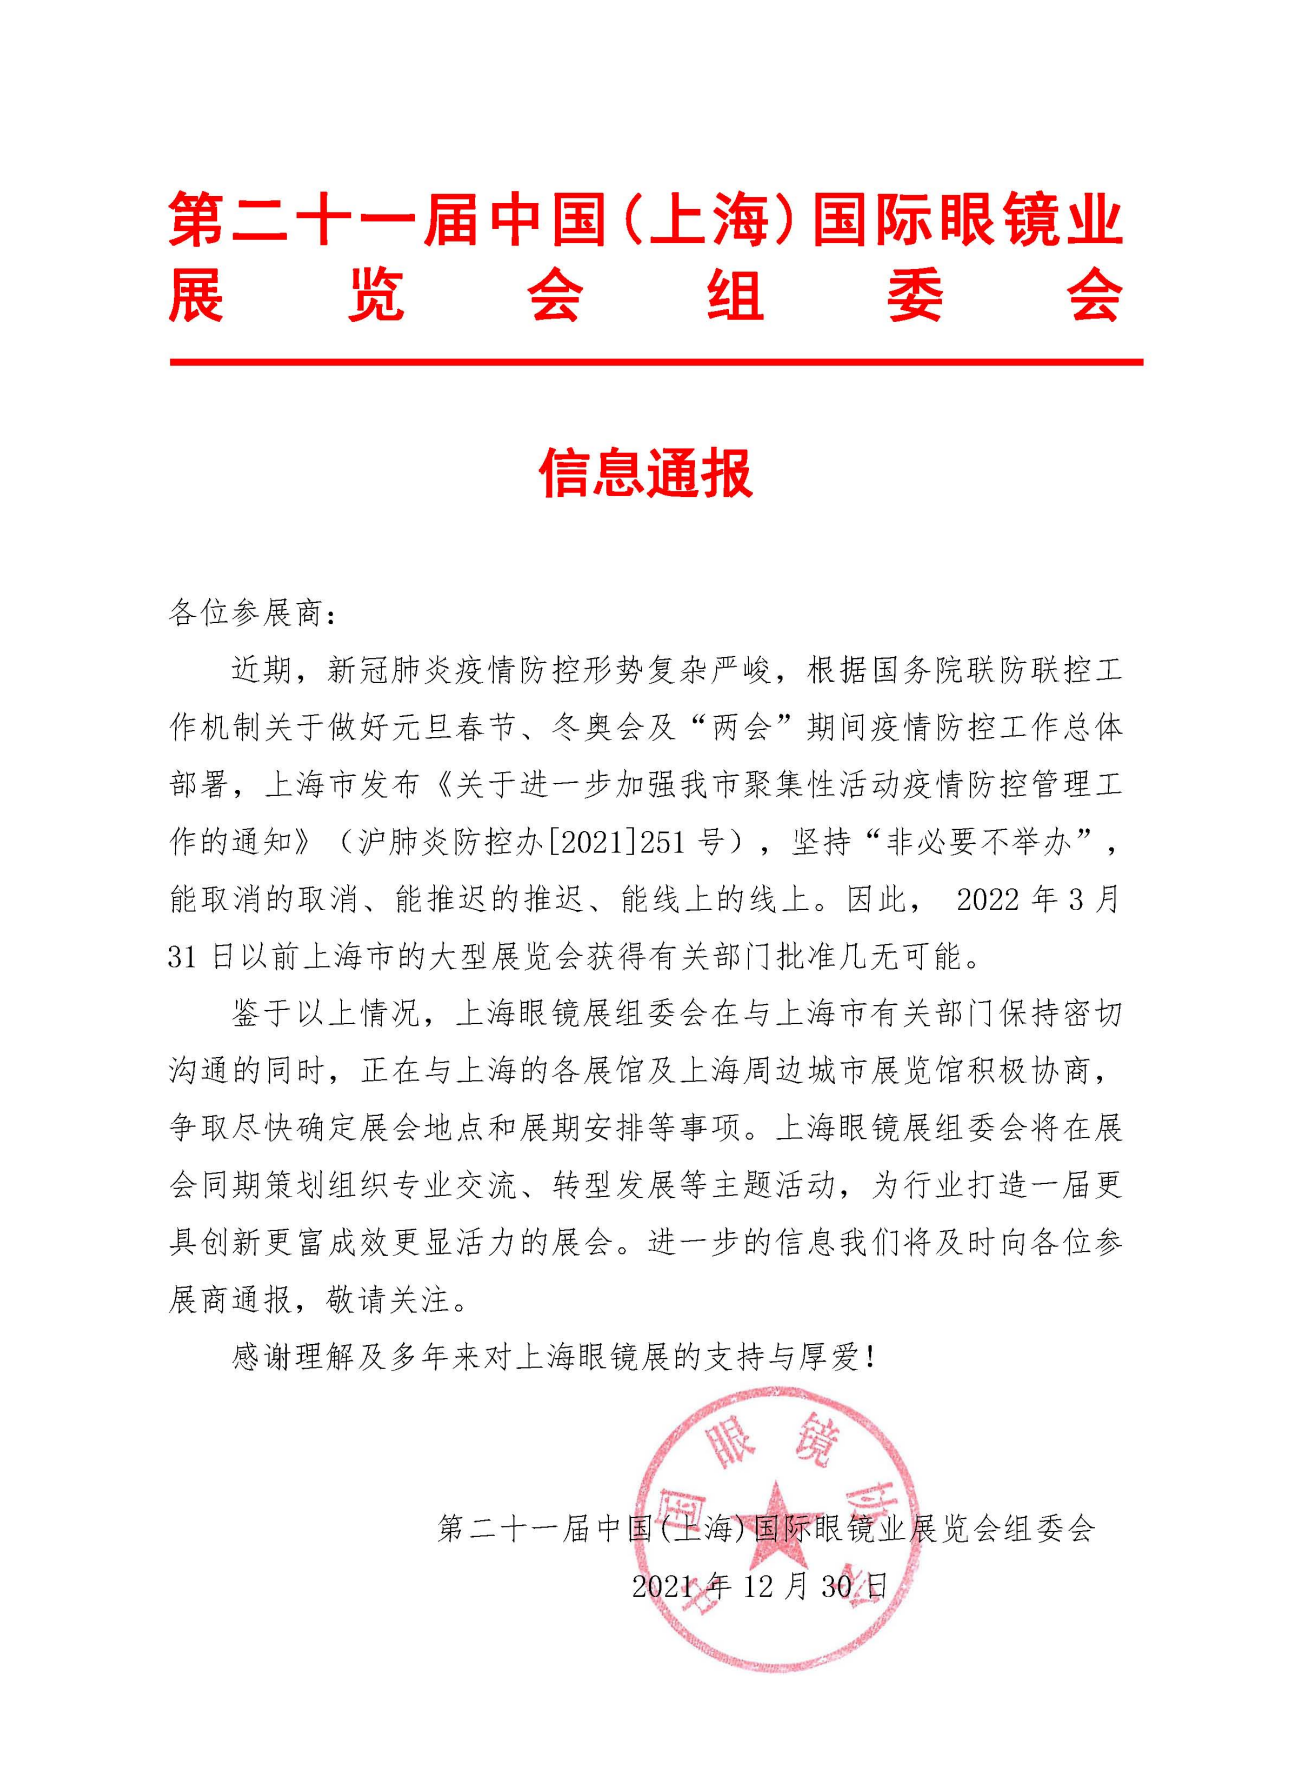 第21届上海眼镜展信息通报.png